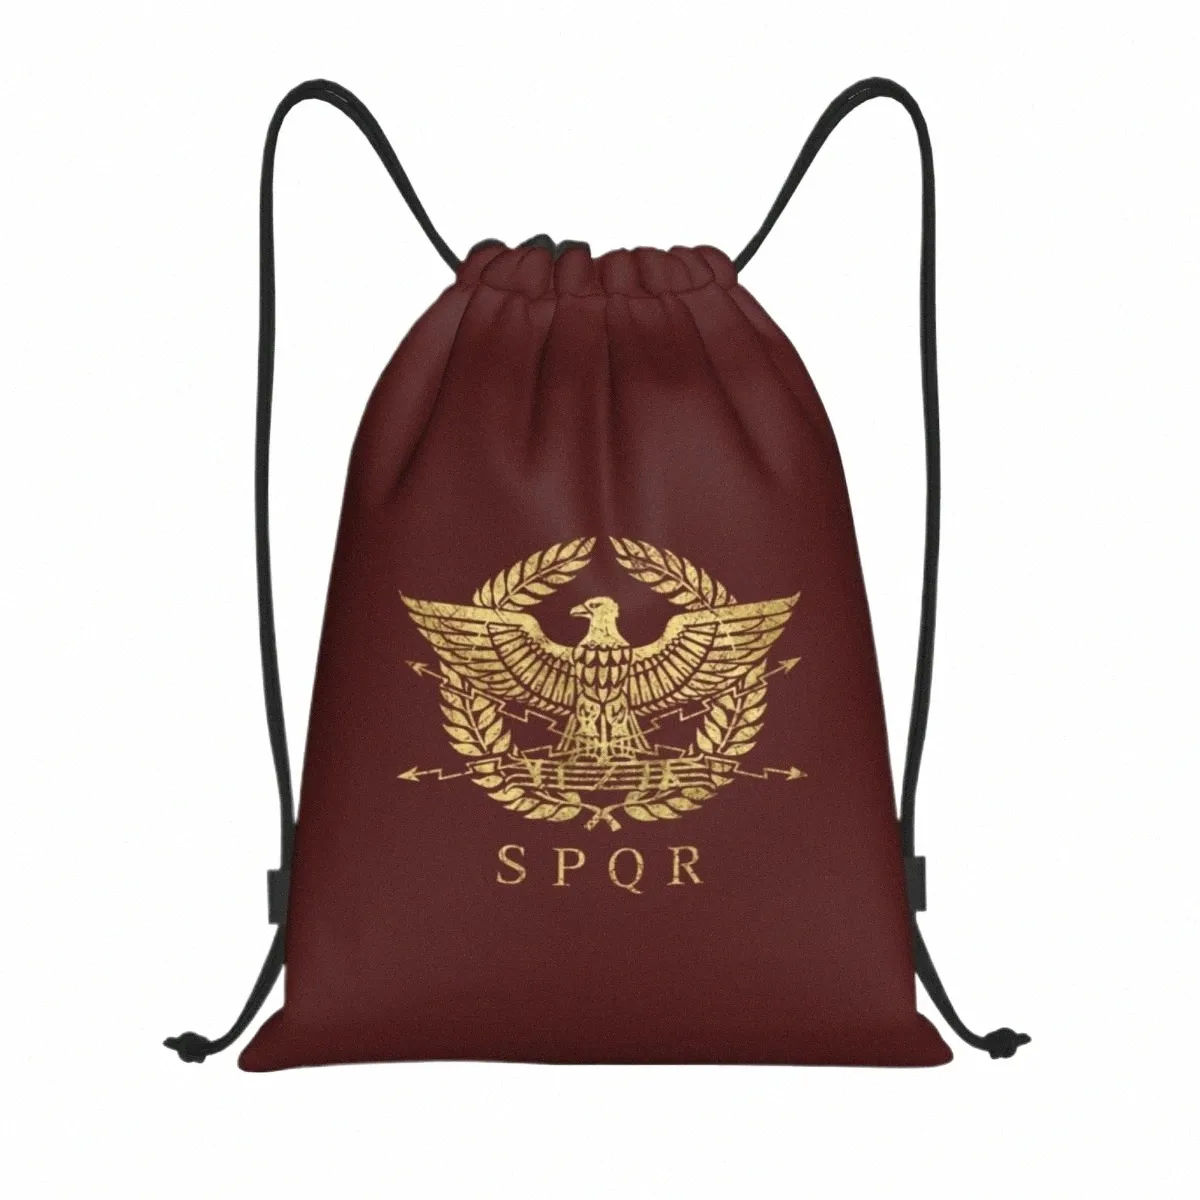 Empire Empire Eagle Emblem Sac à dos Sac à dos Femmes Femmes Léger Italie Italien Pride Gym Sports Sackpack Sacks for Shop C33O #